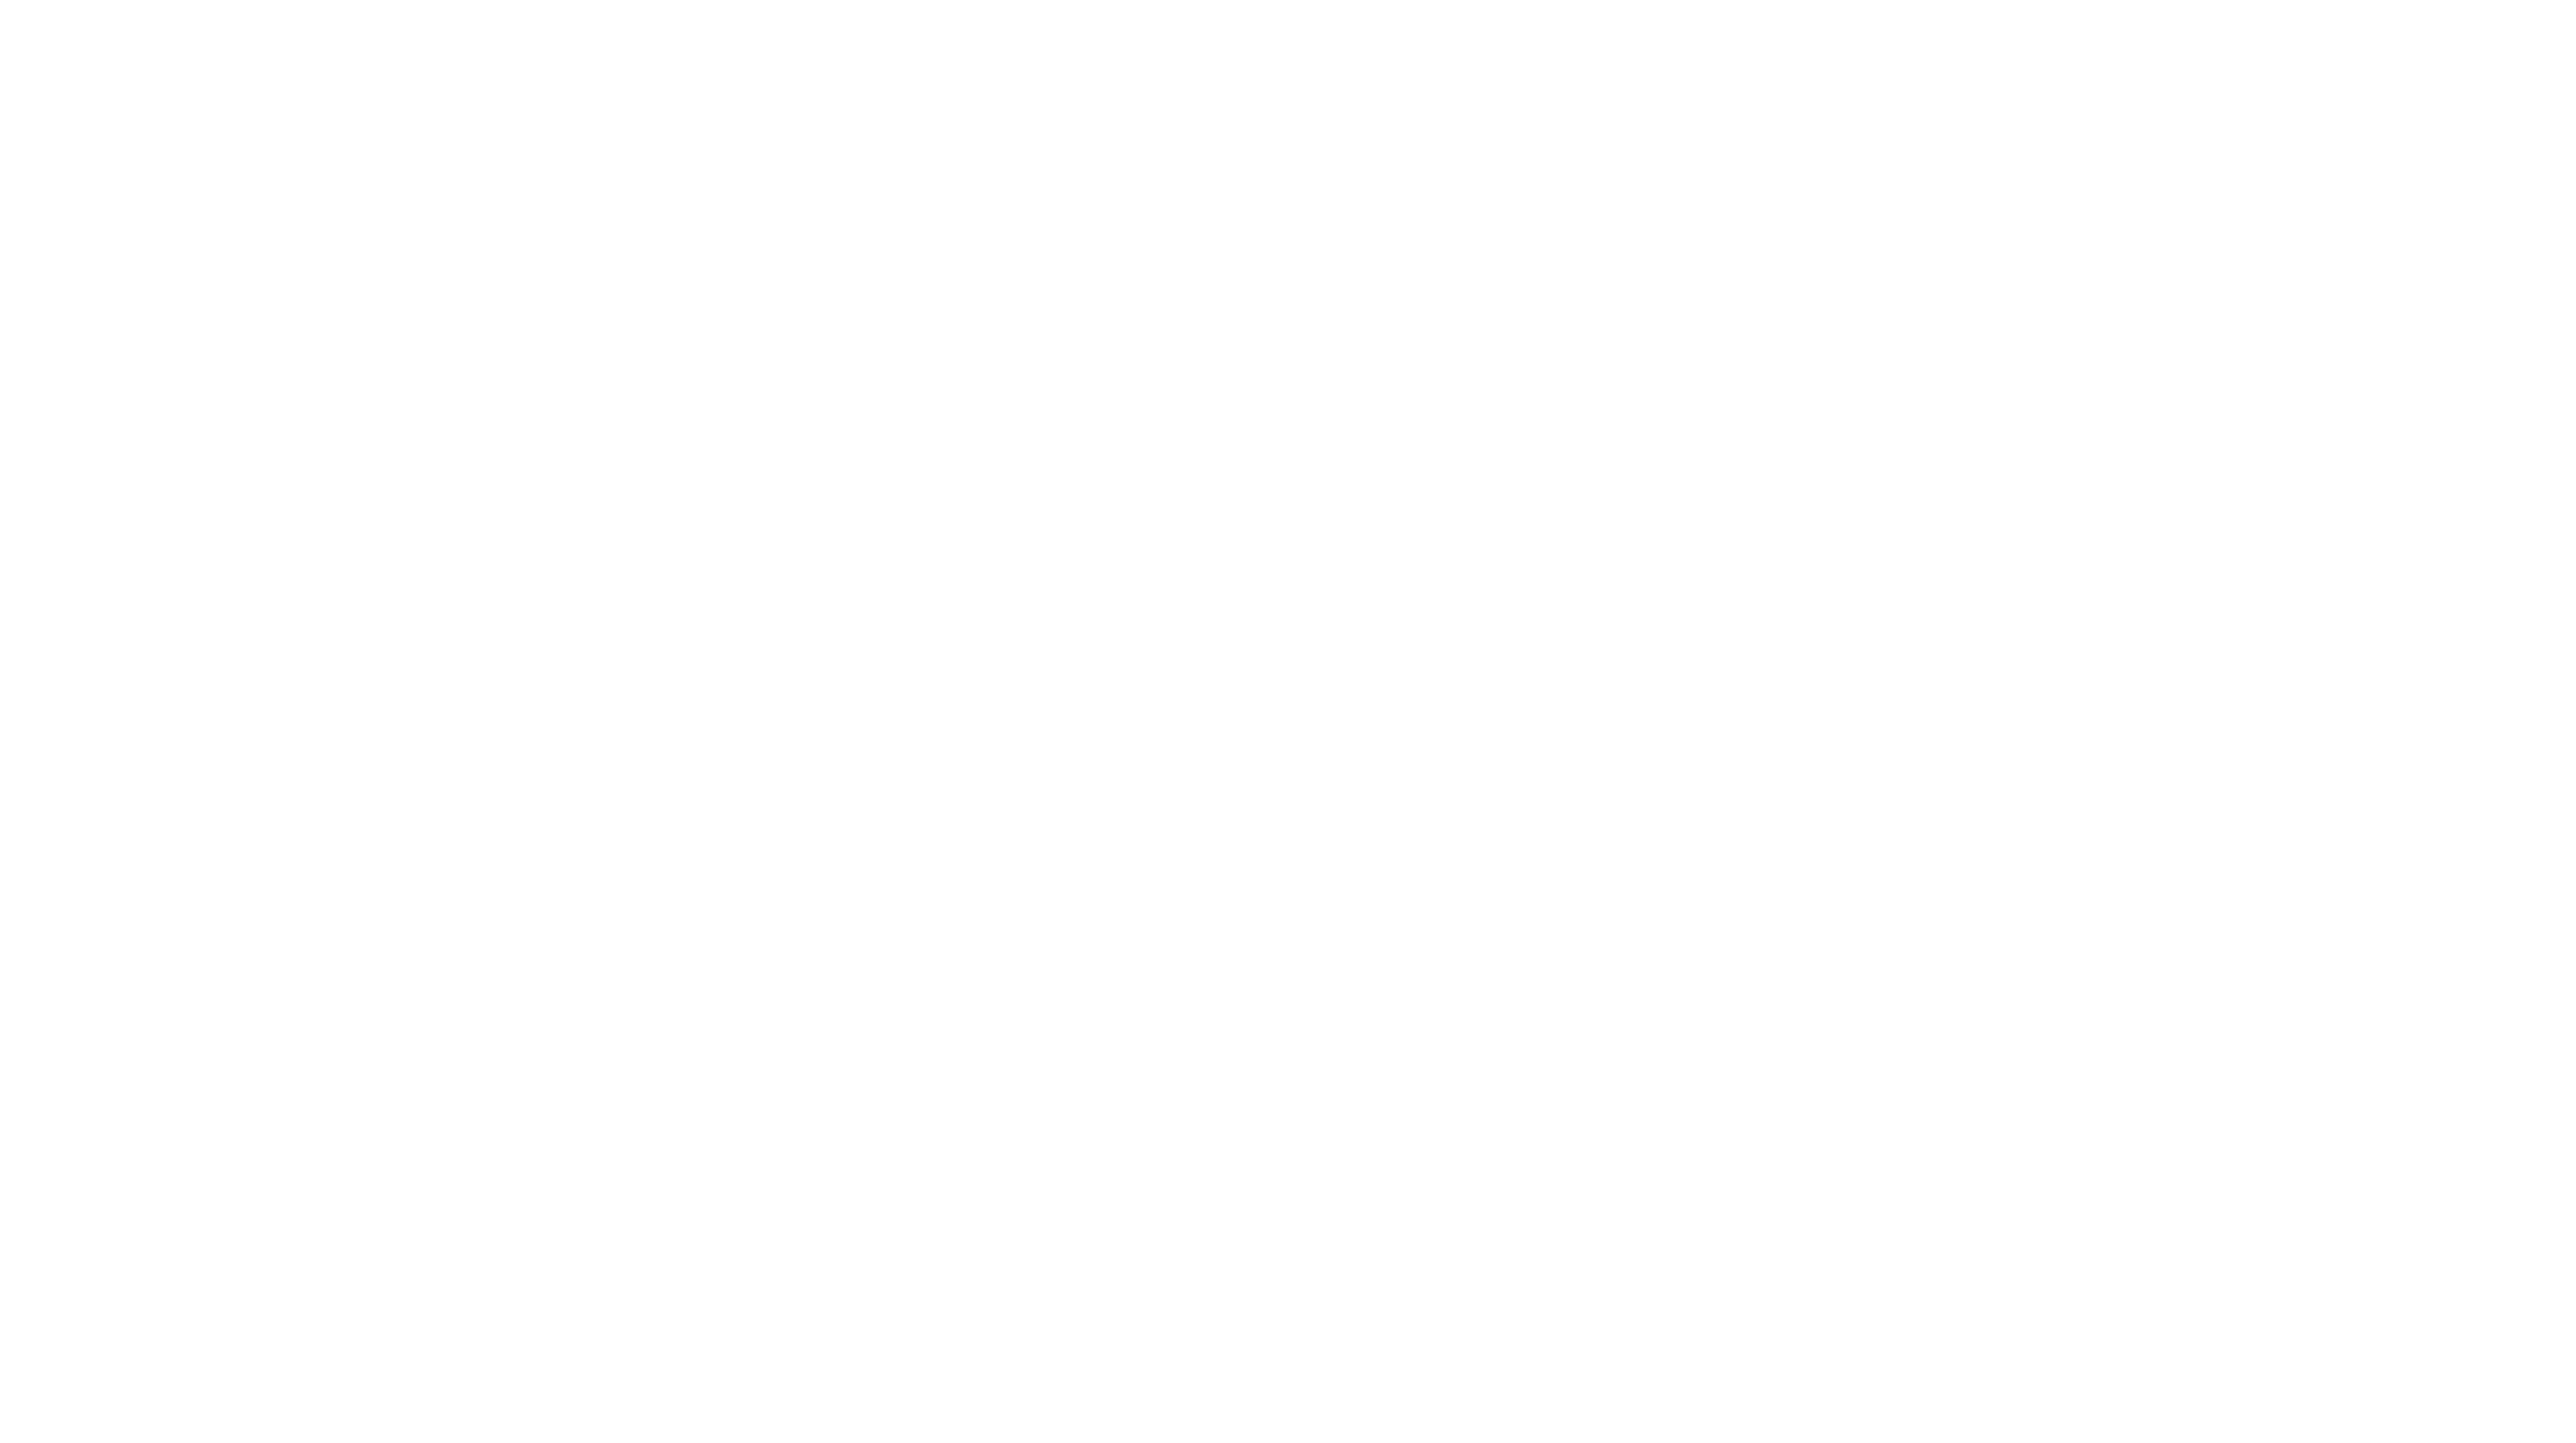 "Von-Oben-Schauen"